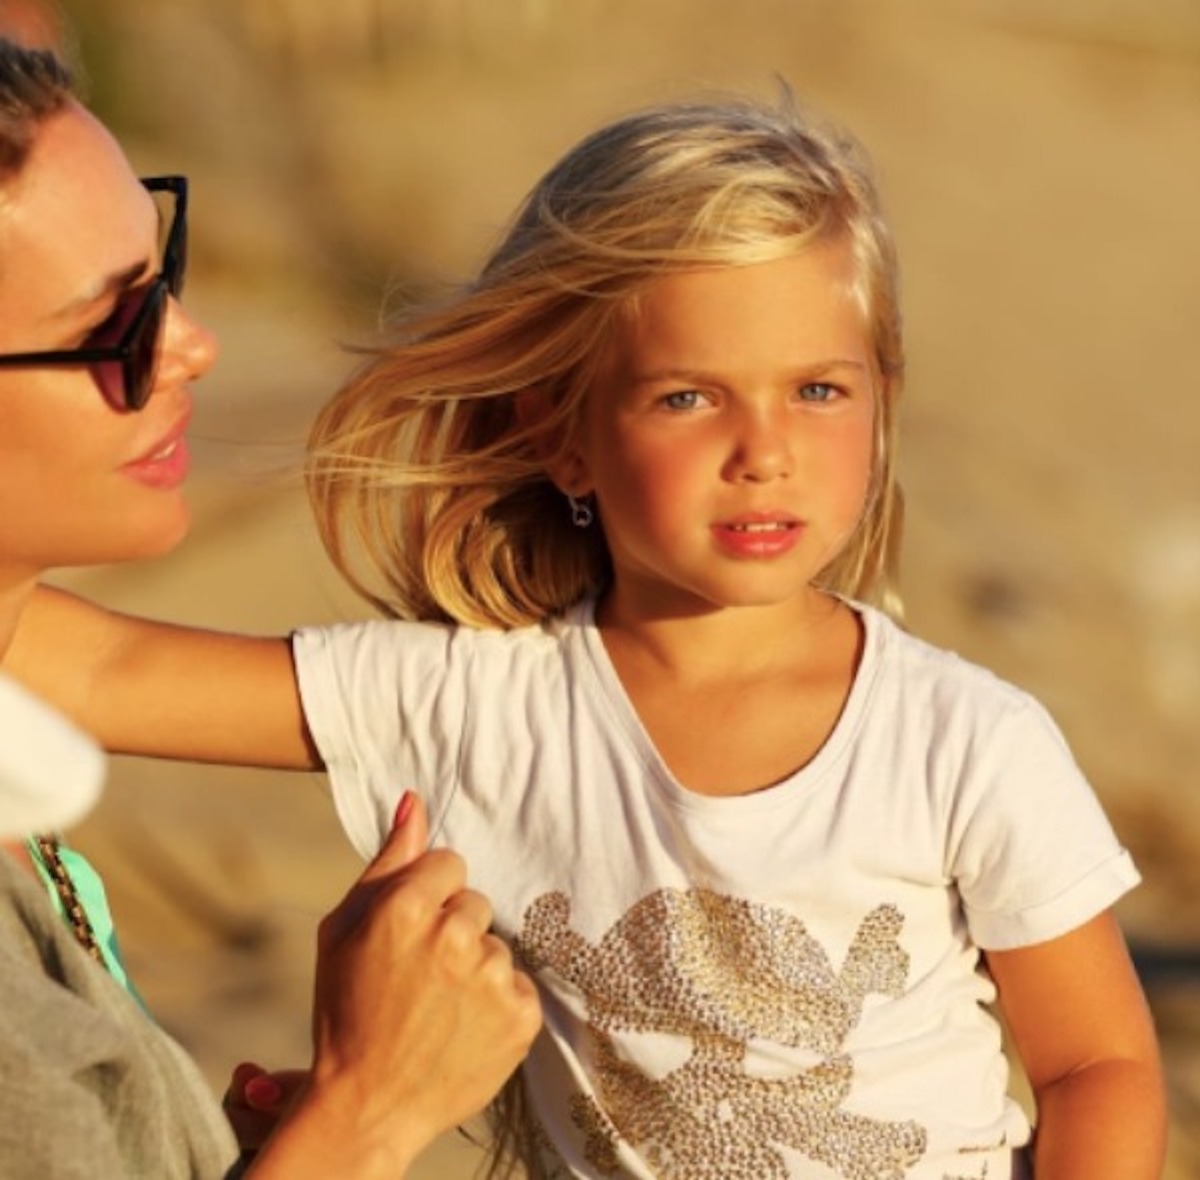 Isabel Totti bellissima nel video della sorella Chanel